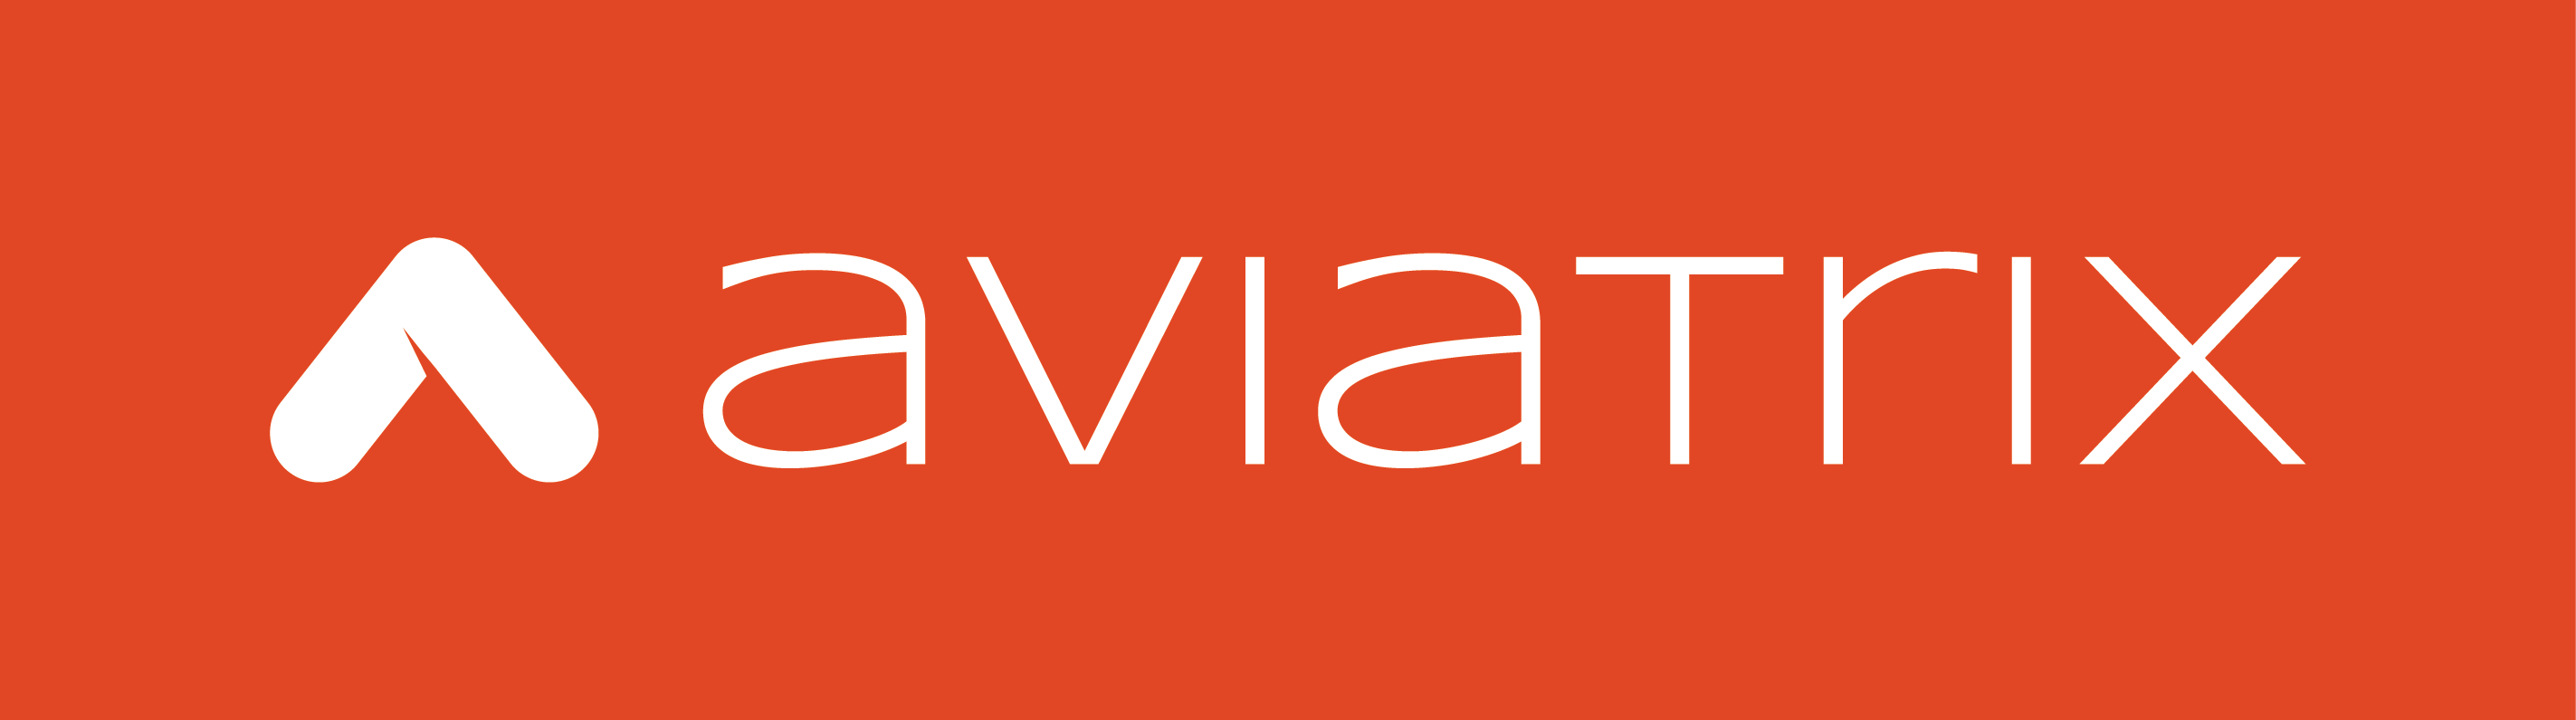 Aviatrix Vpn Client Download For Mac